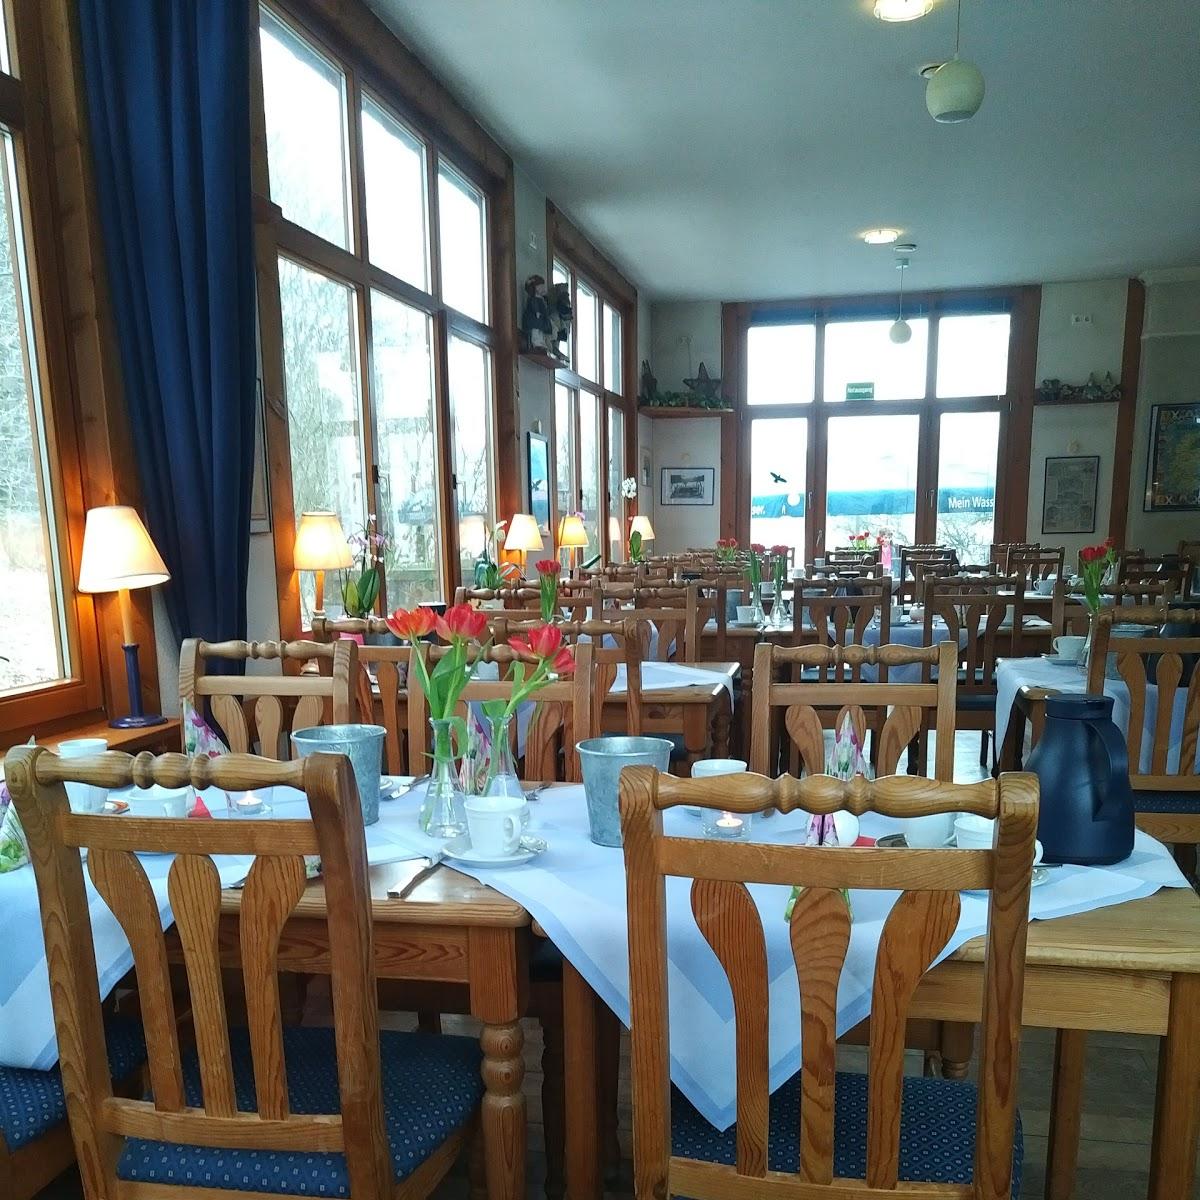 Restaurant "café–restaurant haus hangstein" in Detmold